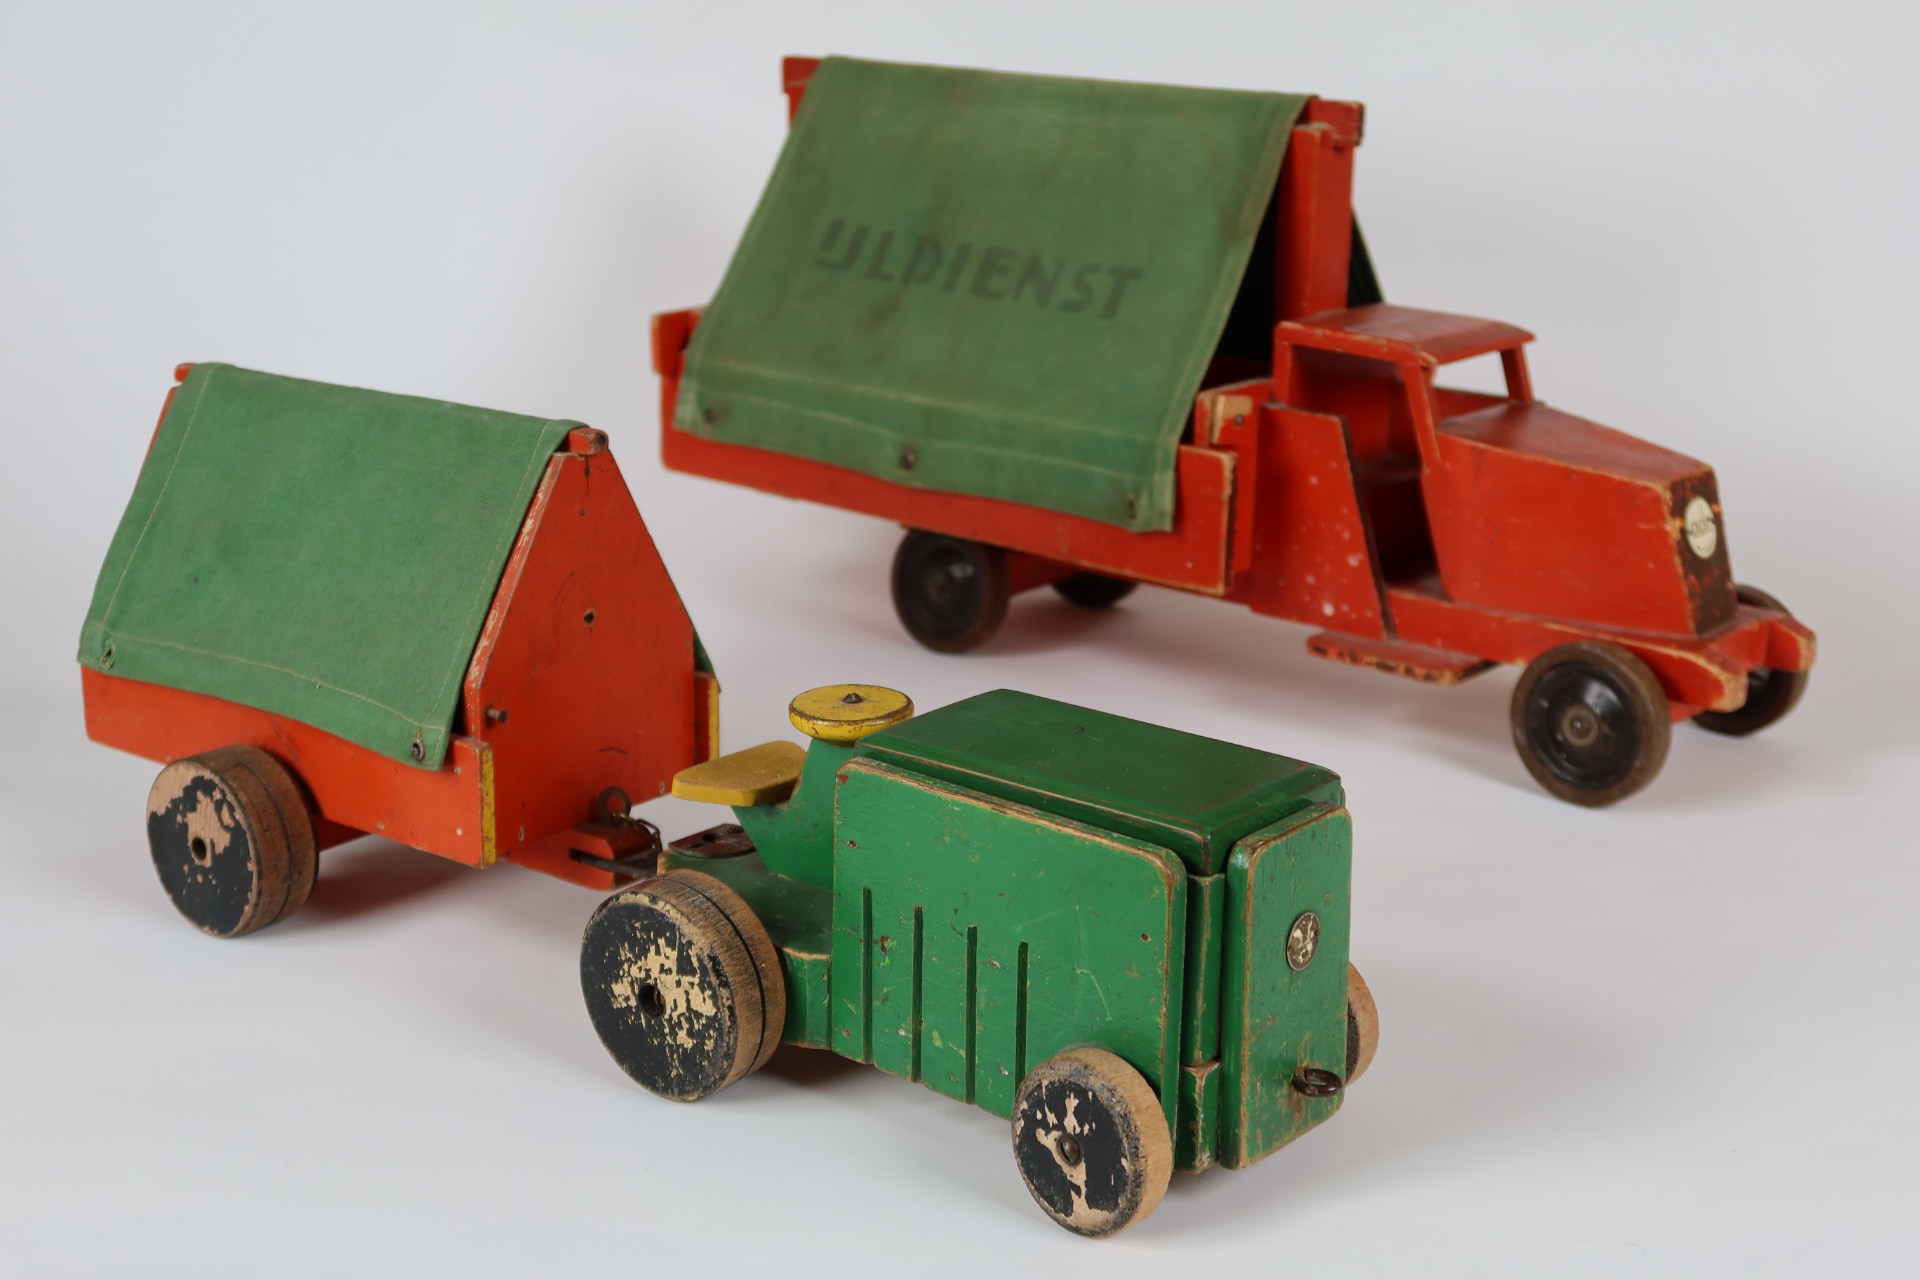 Twee vroege ado wagens, de IJldienst (936) en Tractor (950) met aanhanger (954).